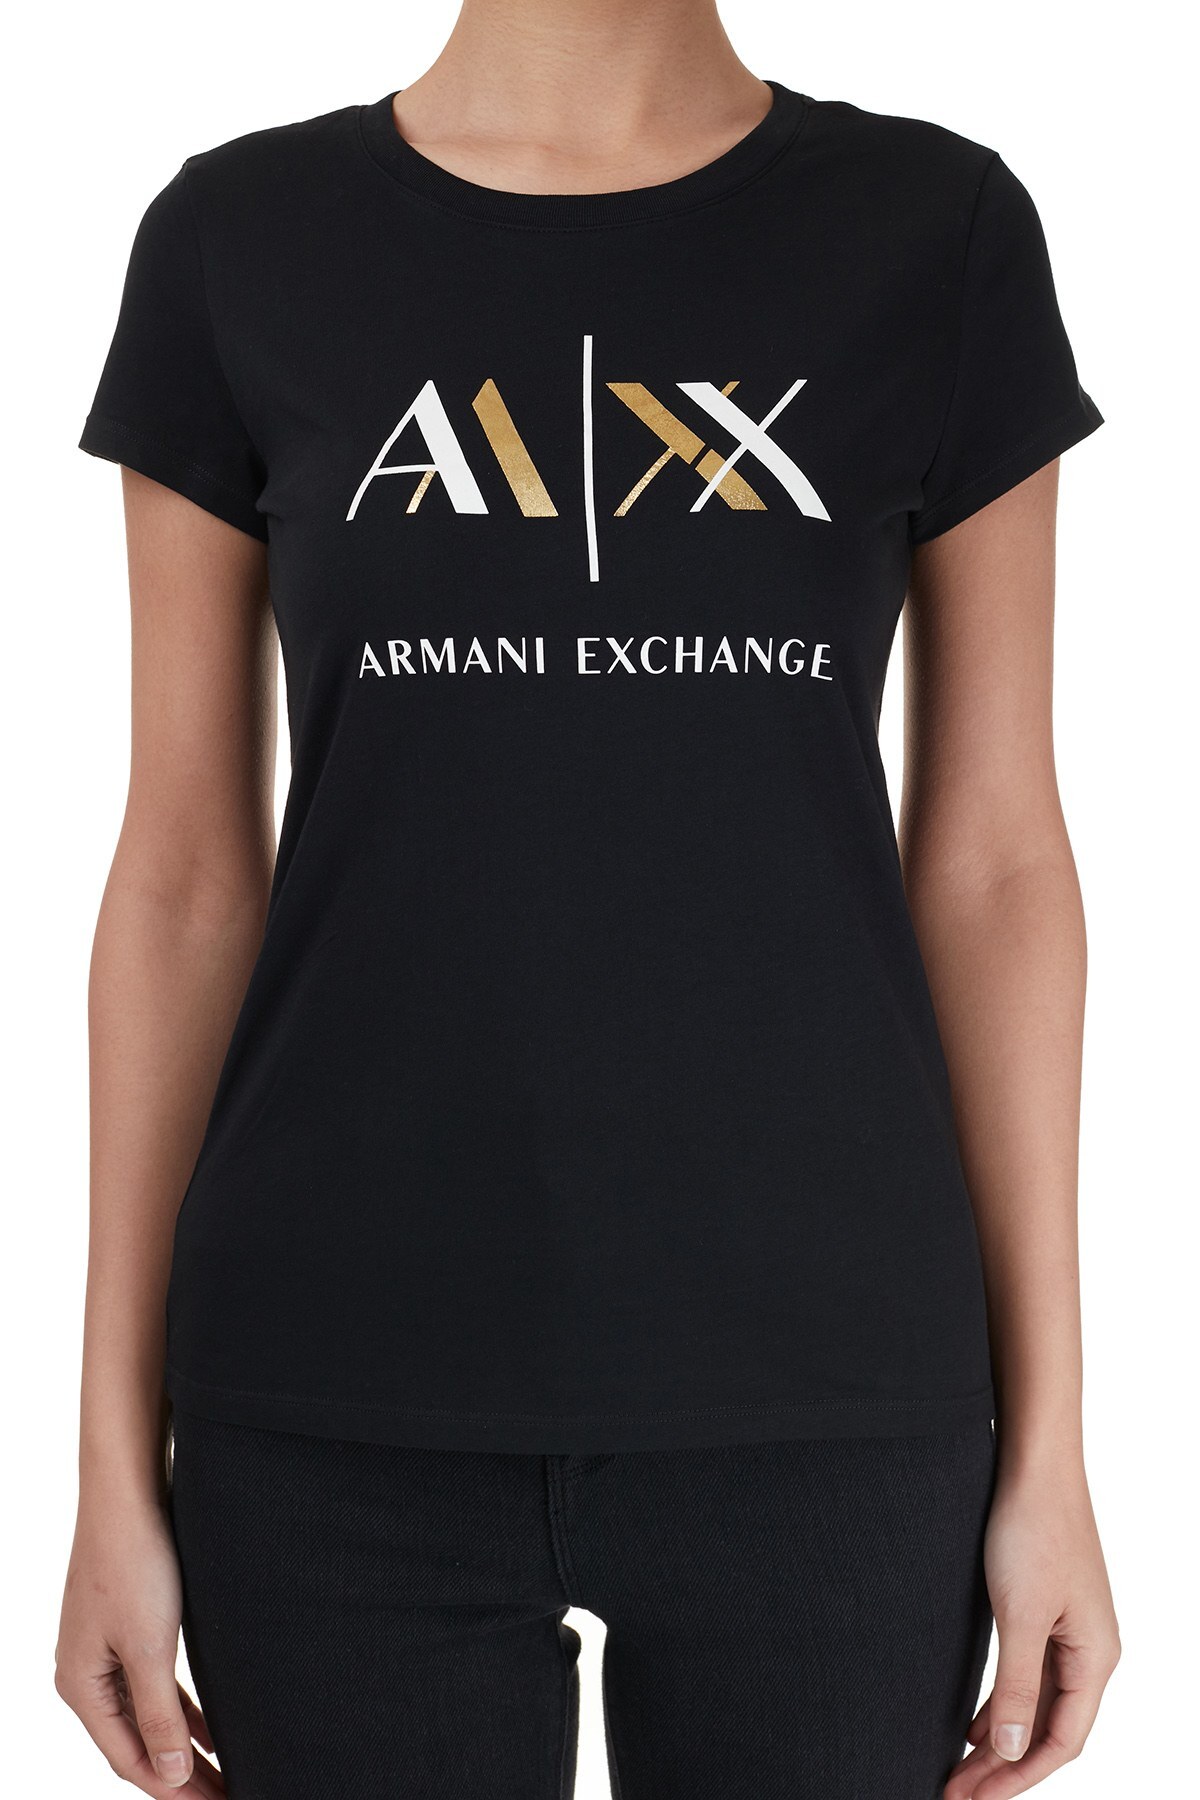 Armani Exchange Baskılı Bisiklet Yaka % 100 Pamuk Bayan T Shirt 6HYTAH YJ73Z 1200 SİYAH